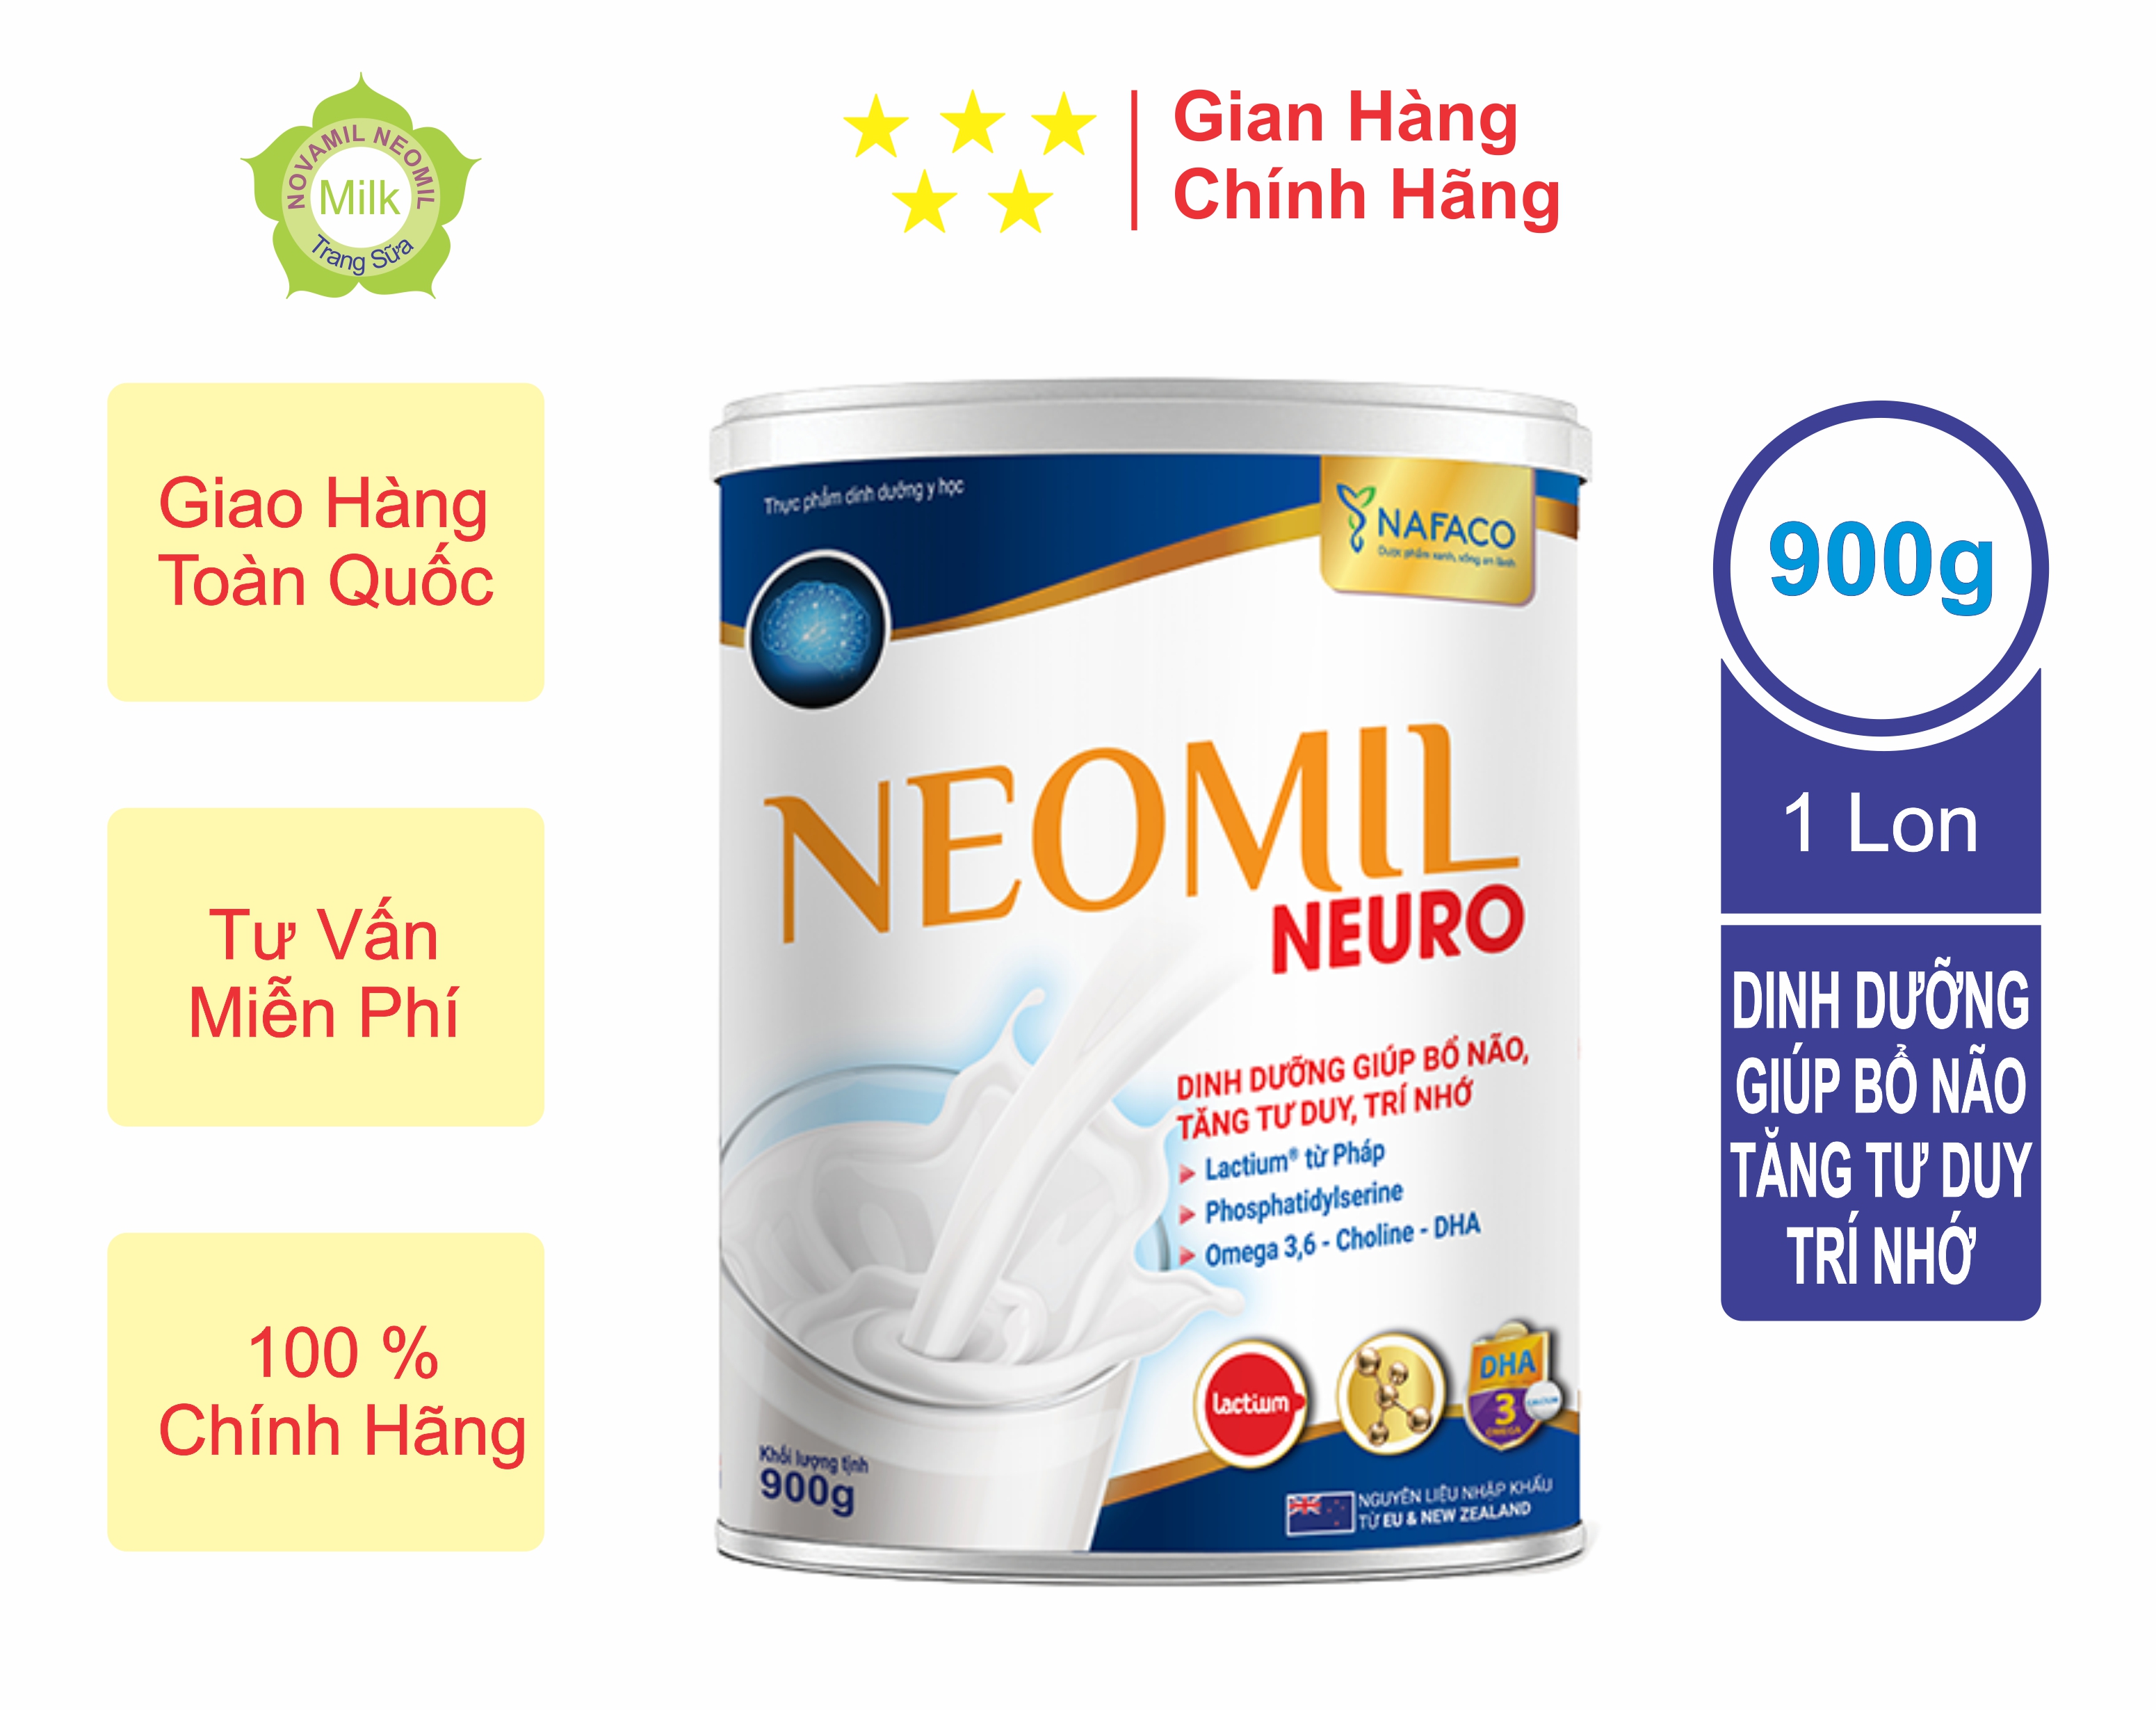 Sữa bột Neomil neuro_Giá rẻ 900g - Dinh dưỡng giúp bổ não